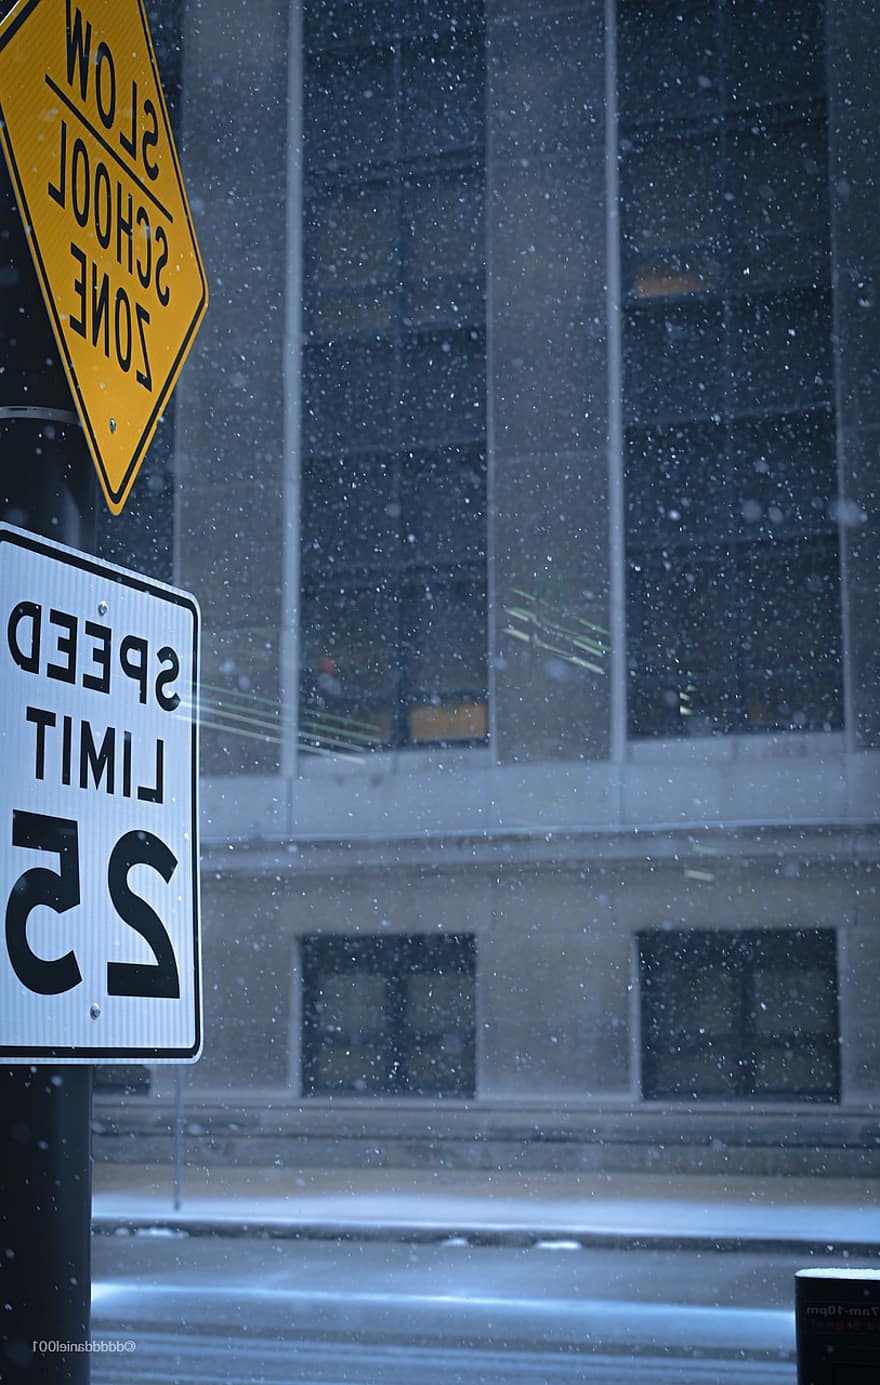 zīme, iela, sniegs, ziemā, ceļa zīme, ceļazīme, ātruma ierobežojums, skolas zona, ceļš, ārā, laikapstākļi